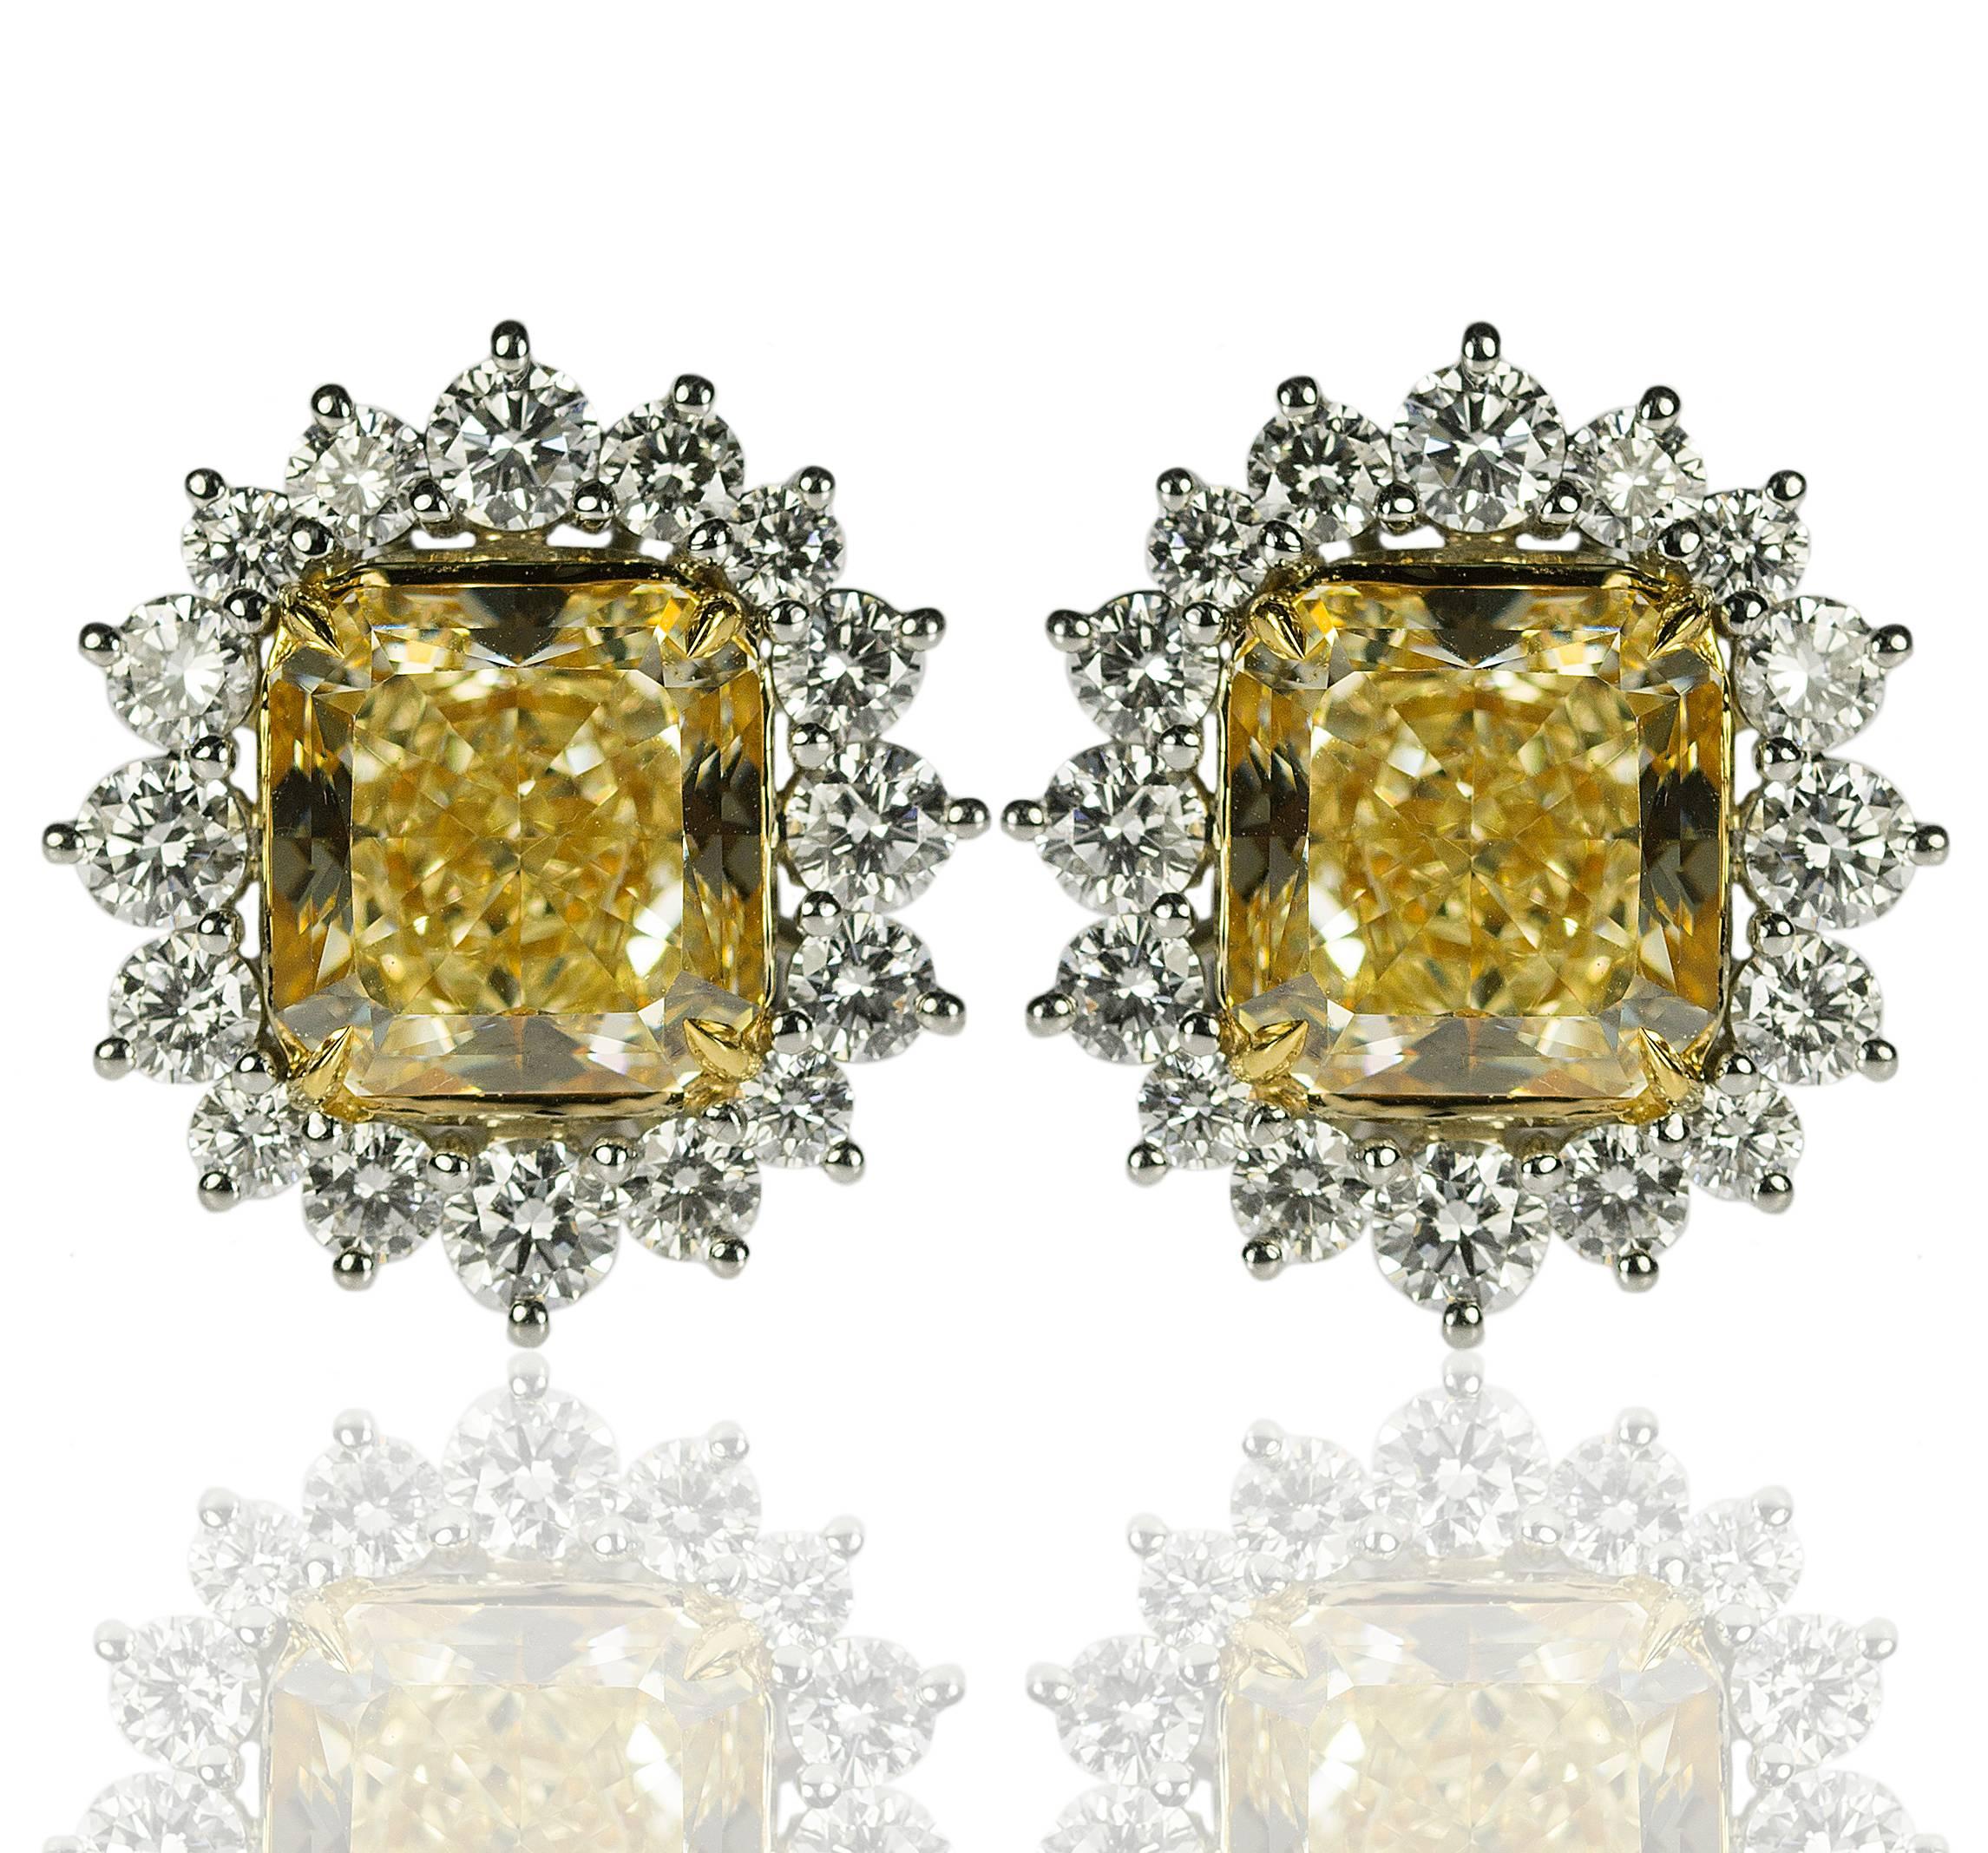 Daziling platinum & 18k Earrings Containg two GIA certified 'Fancy Yellow" diamonds weighing 8.16 carats total weight and one being certified as Fancy Yellow VVS2 clarity and the other being Fancy Yellow VS1 carity. The yellow diamonds are